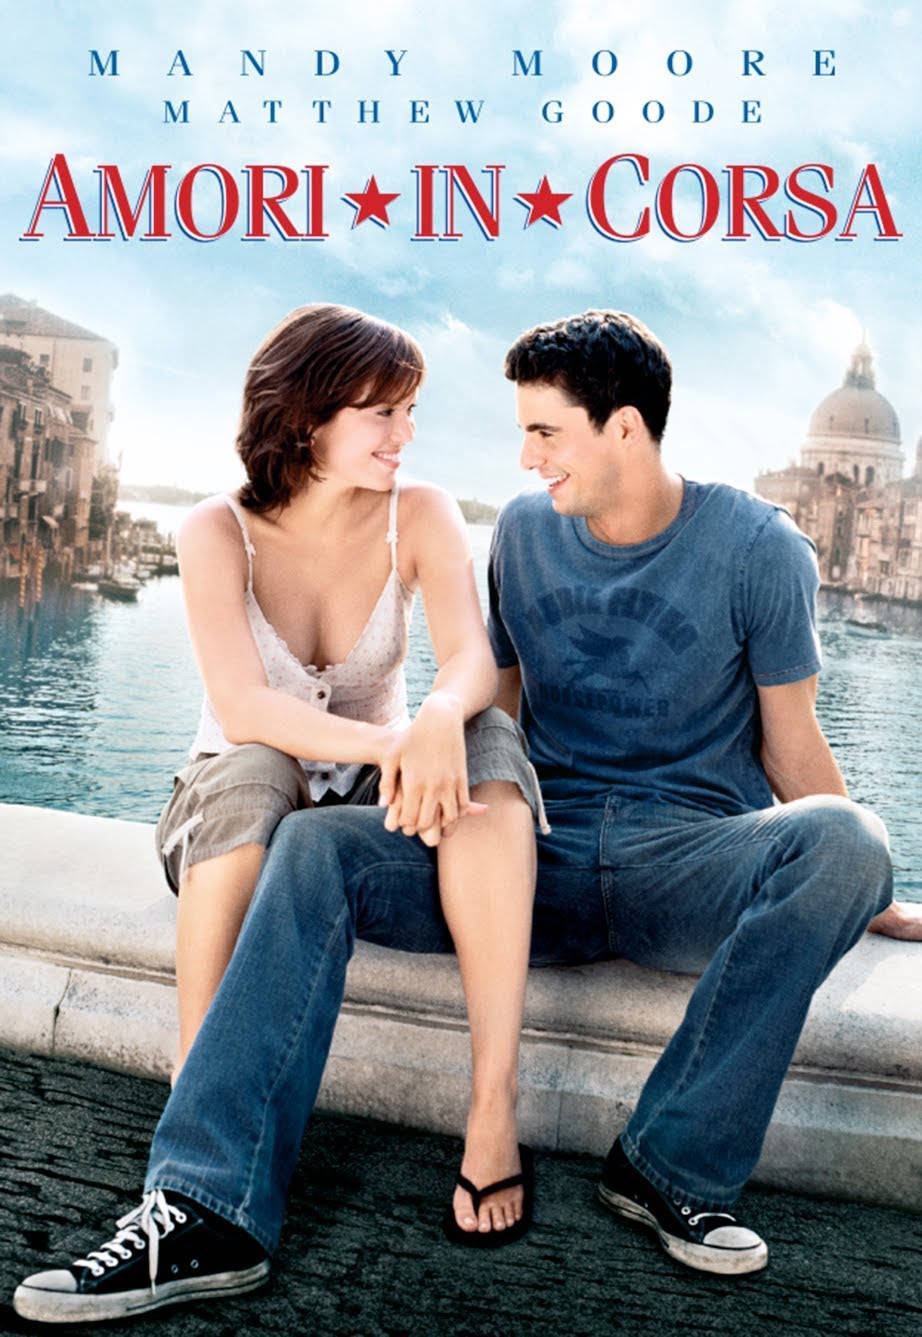 Amori in corsa (2004)